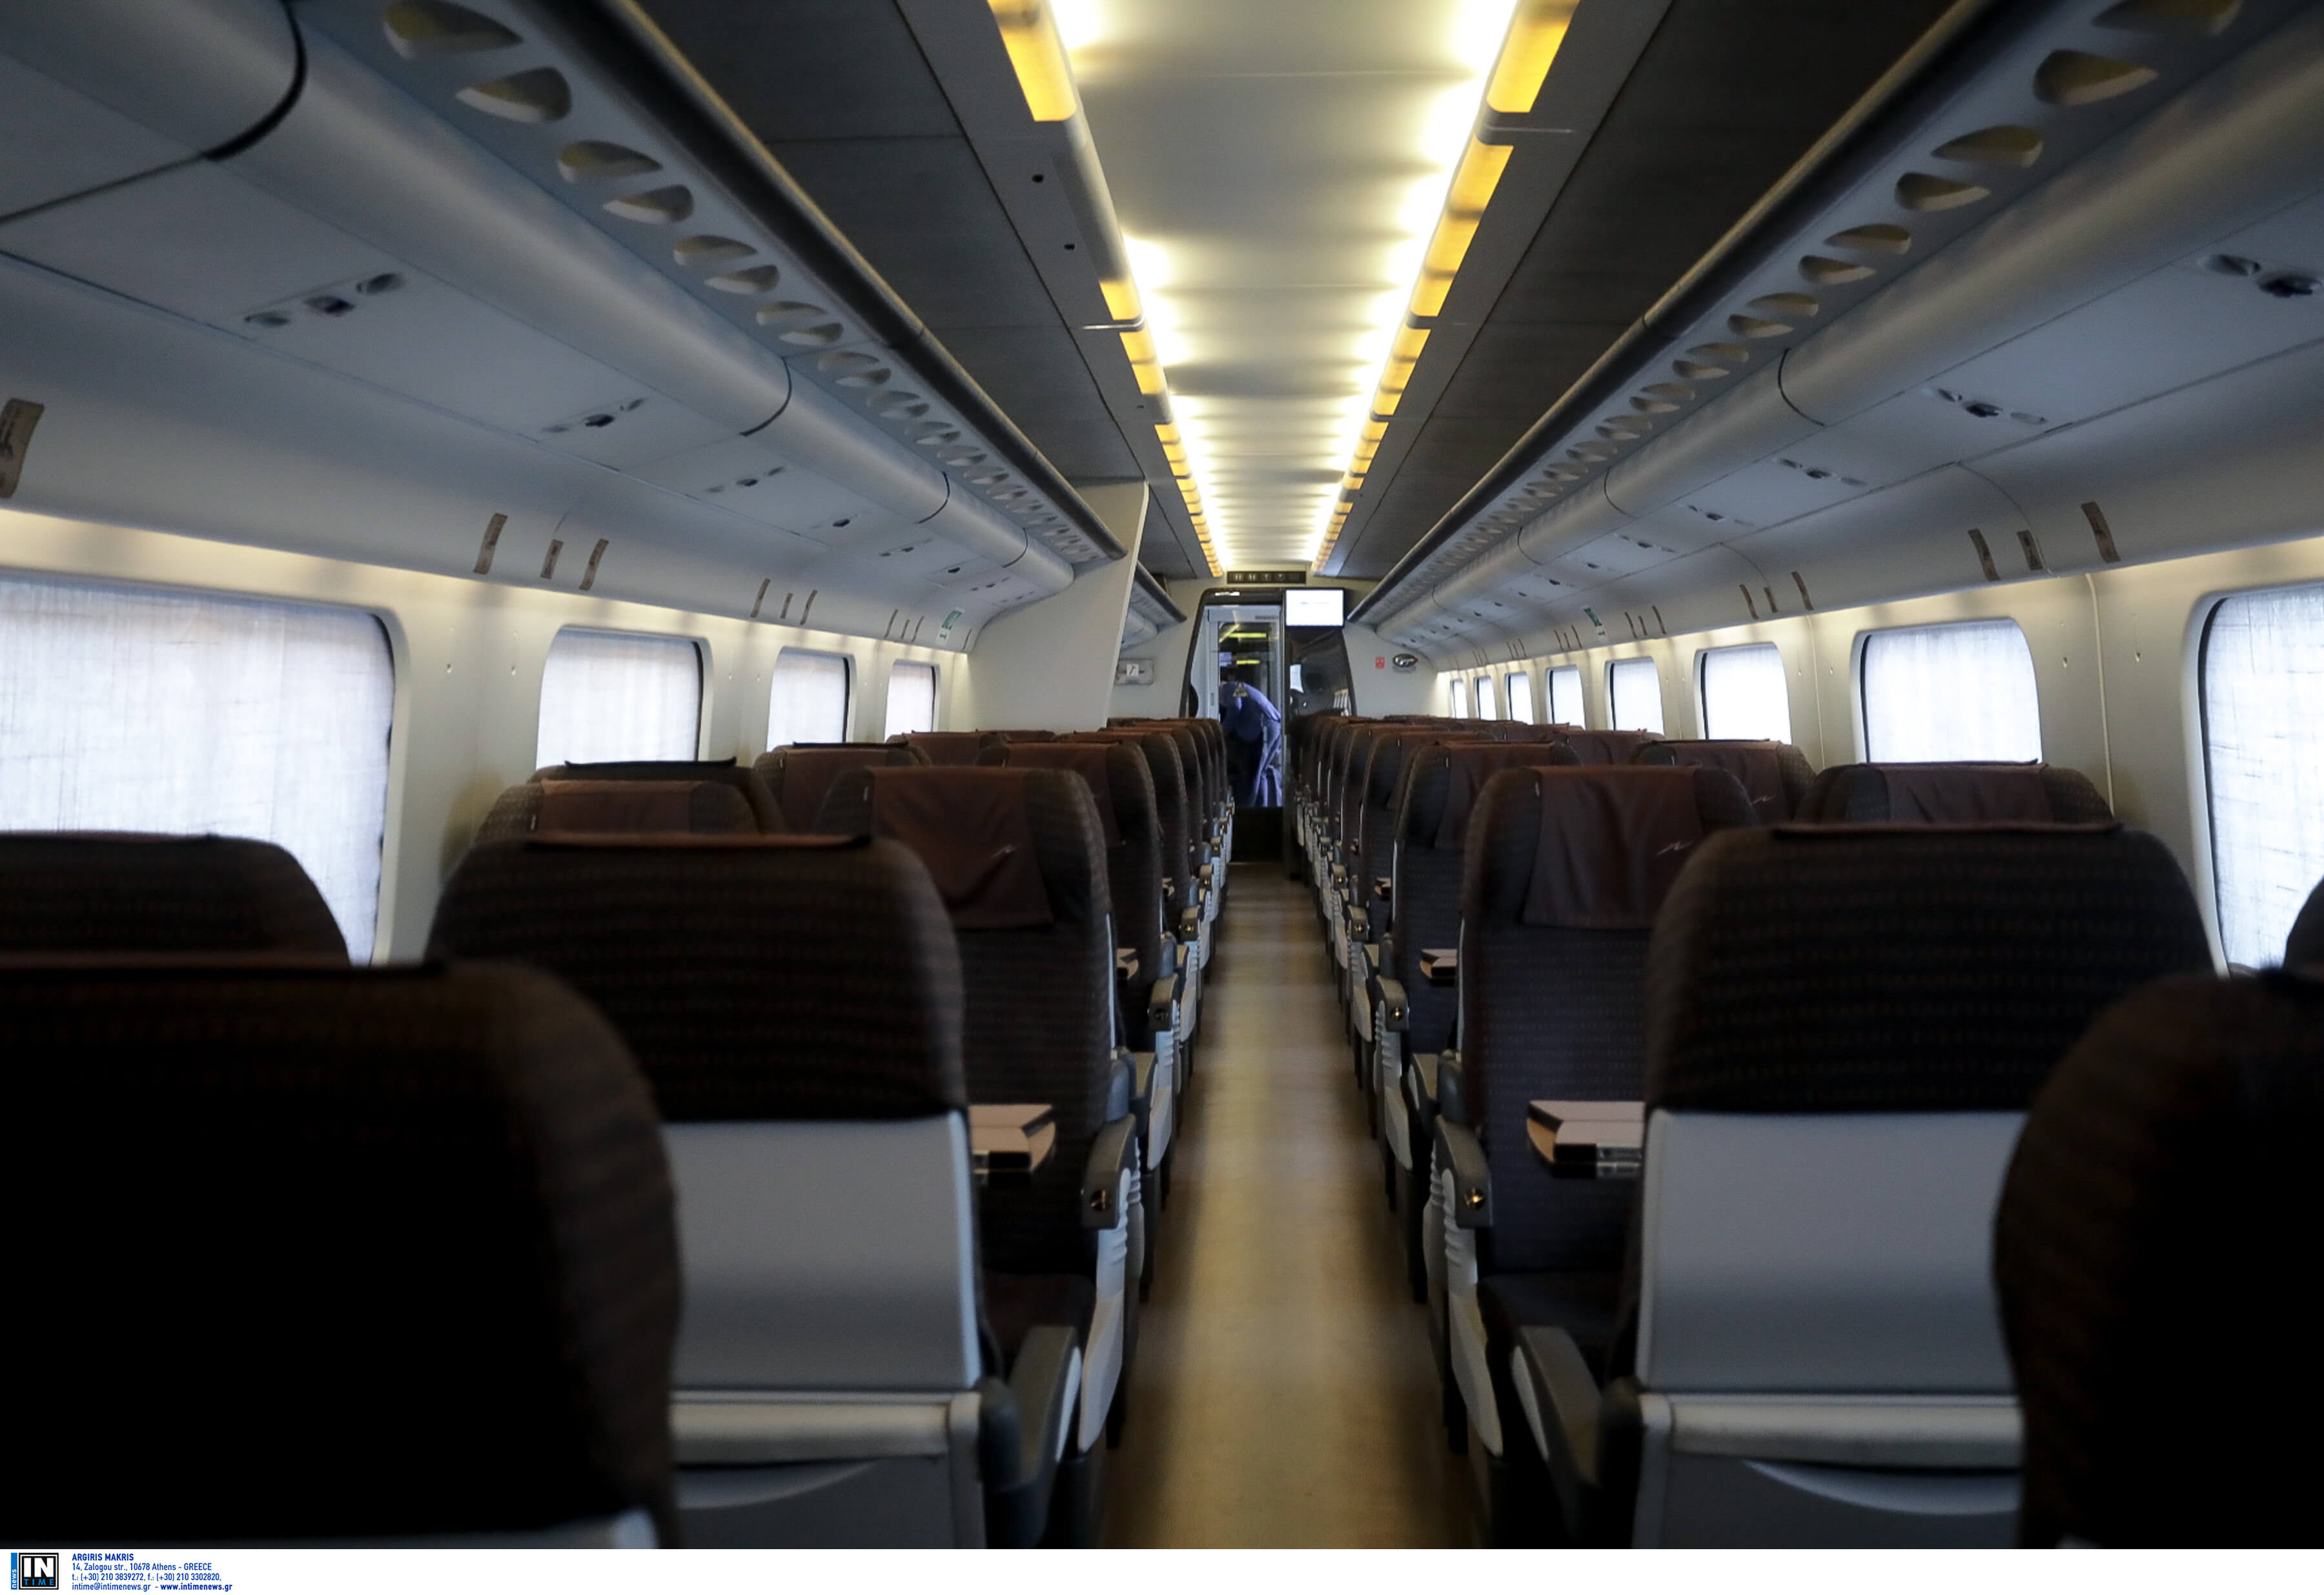 ΤΡΑΙΝΟΣΕ: Συγγνώμη από τους επιβάτες για την συμπλοκή εμπόρων ναρκωτικών μπροστά στα μάτια τους!